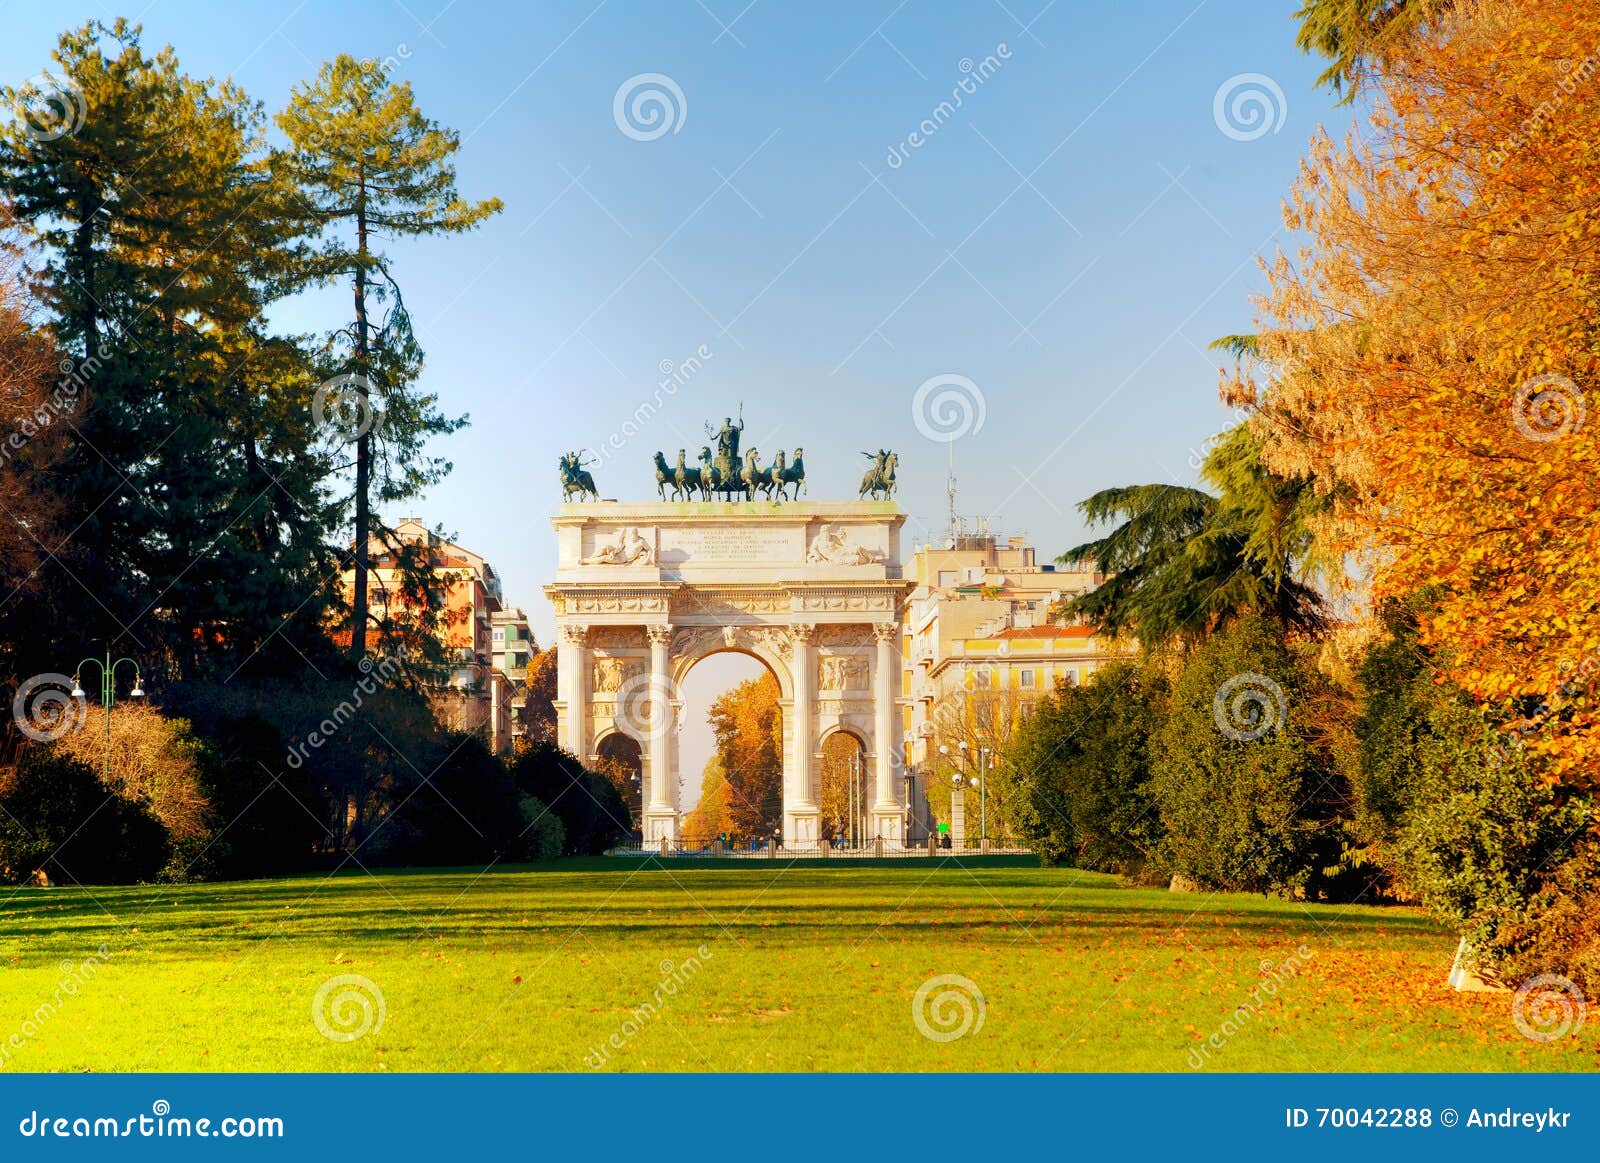 Arch of Peace (Porta Sempione) in Milan Stock Photo - Image of sempione ...